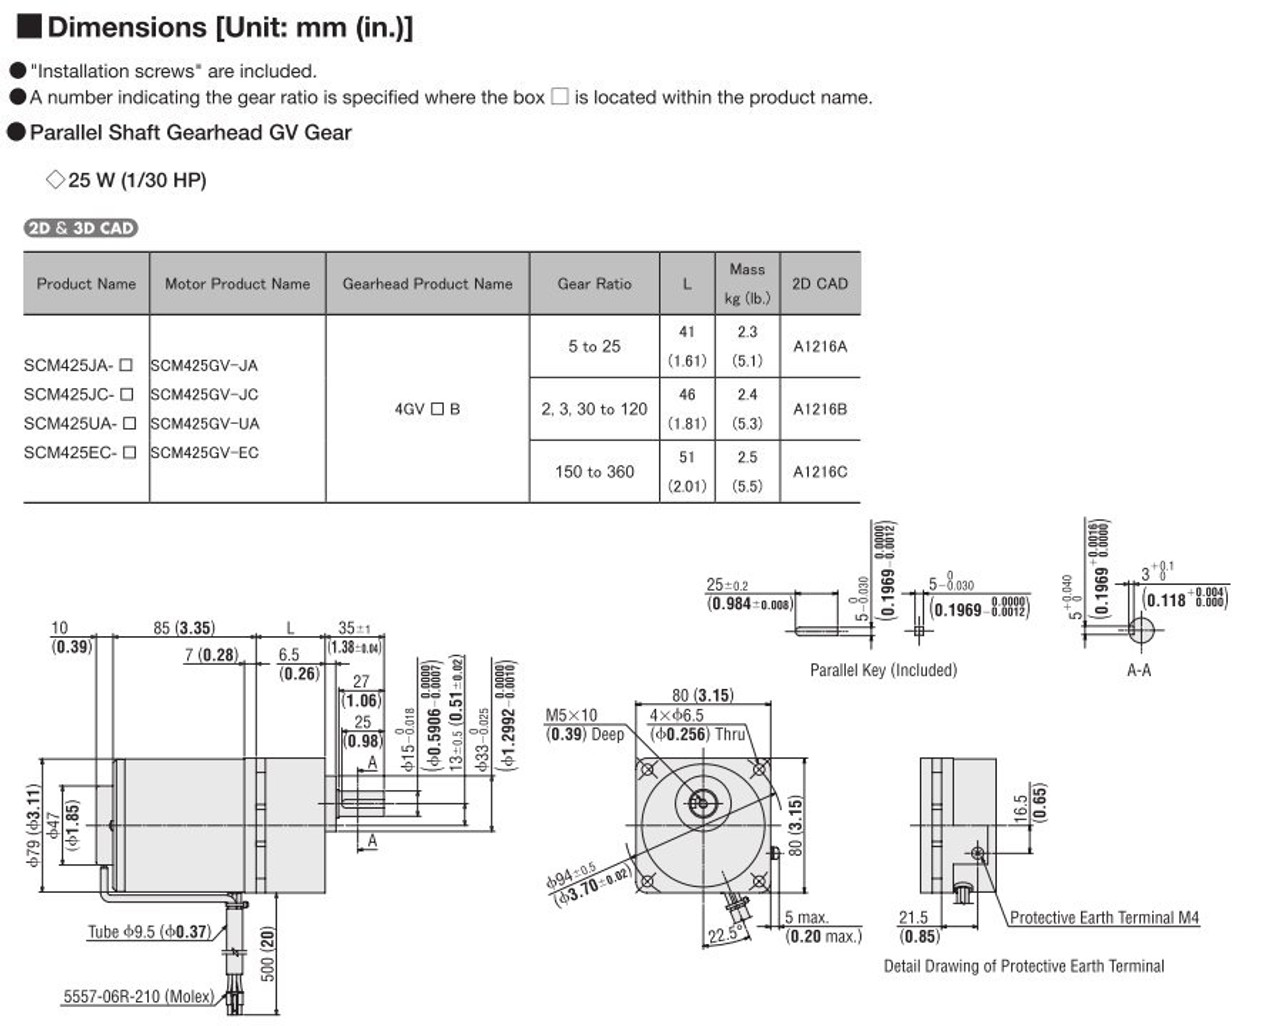 SCM425EC-100 / DSCD25EC - Dimensions